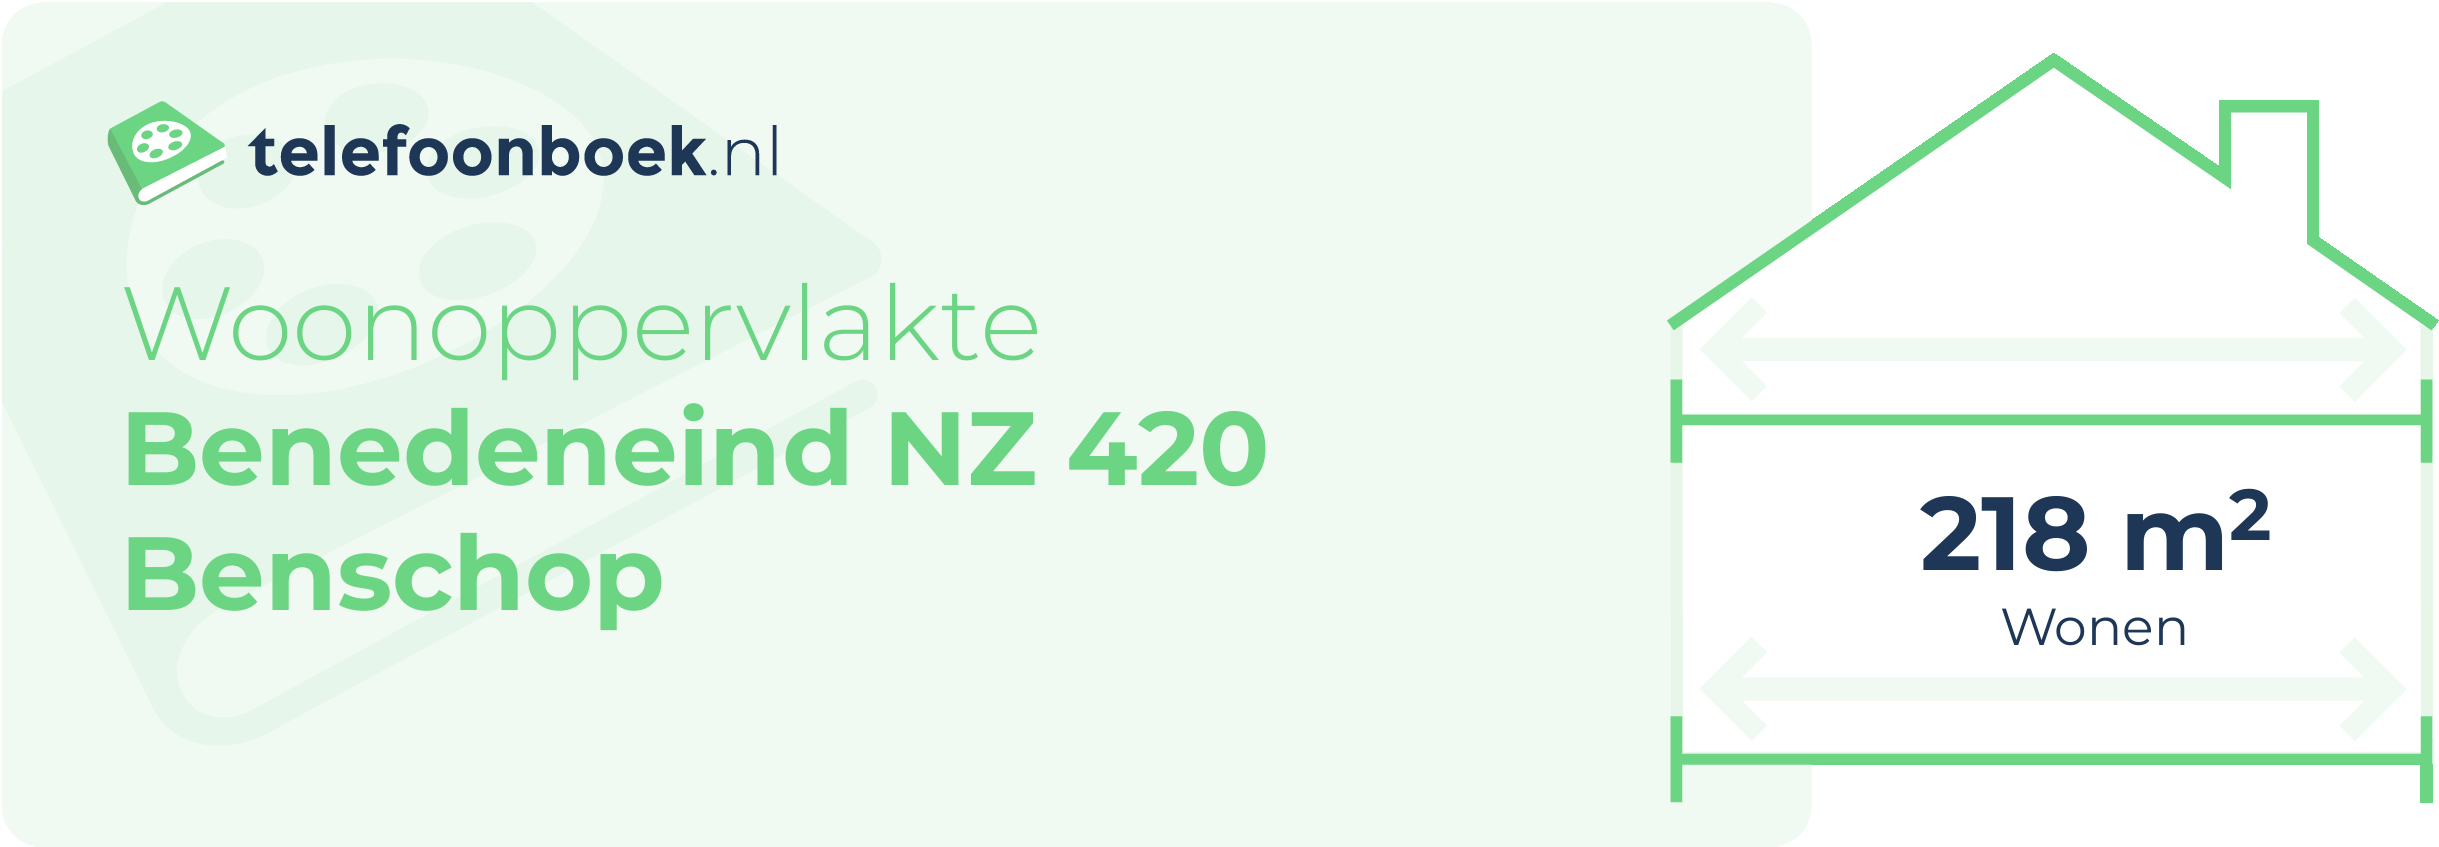 Woonoppervlakte Benedeneind NZ 420 Benschop